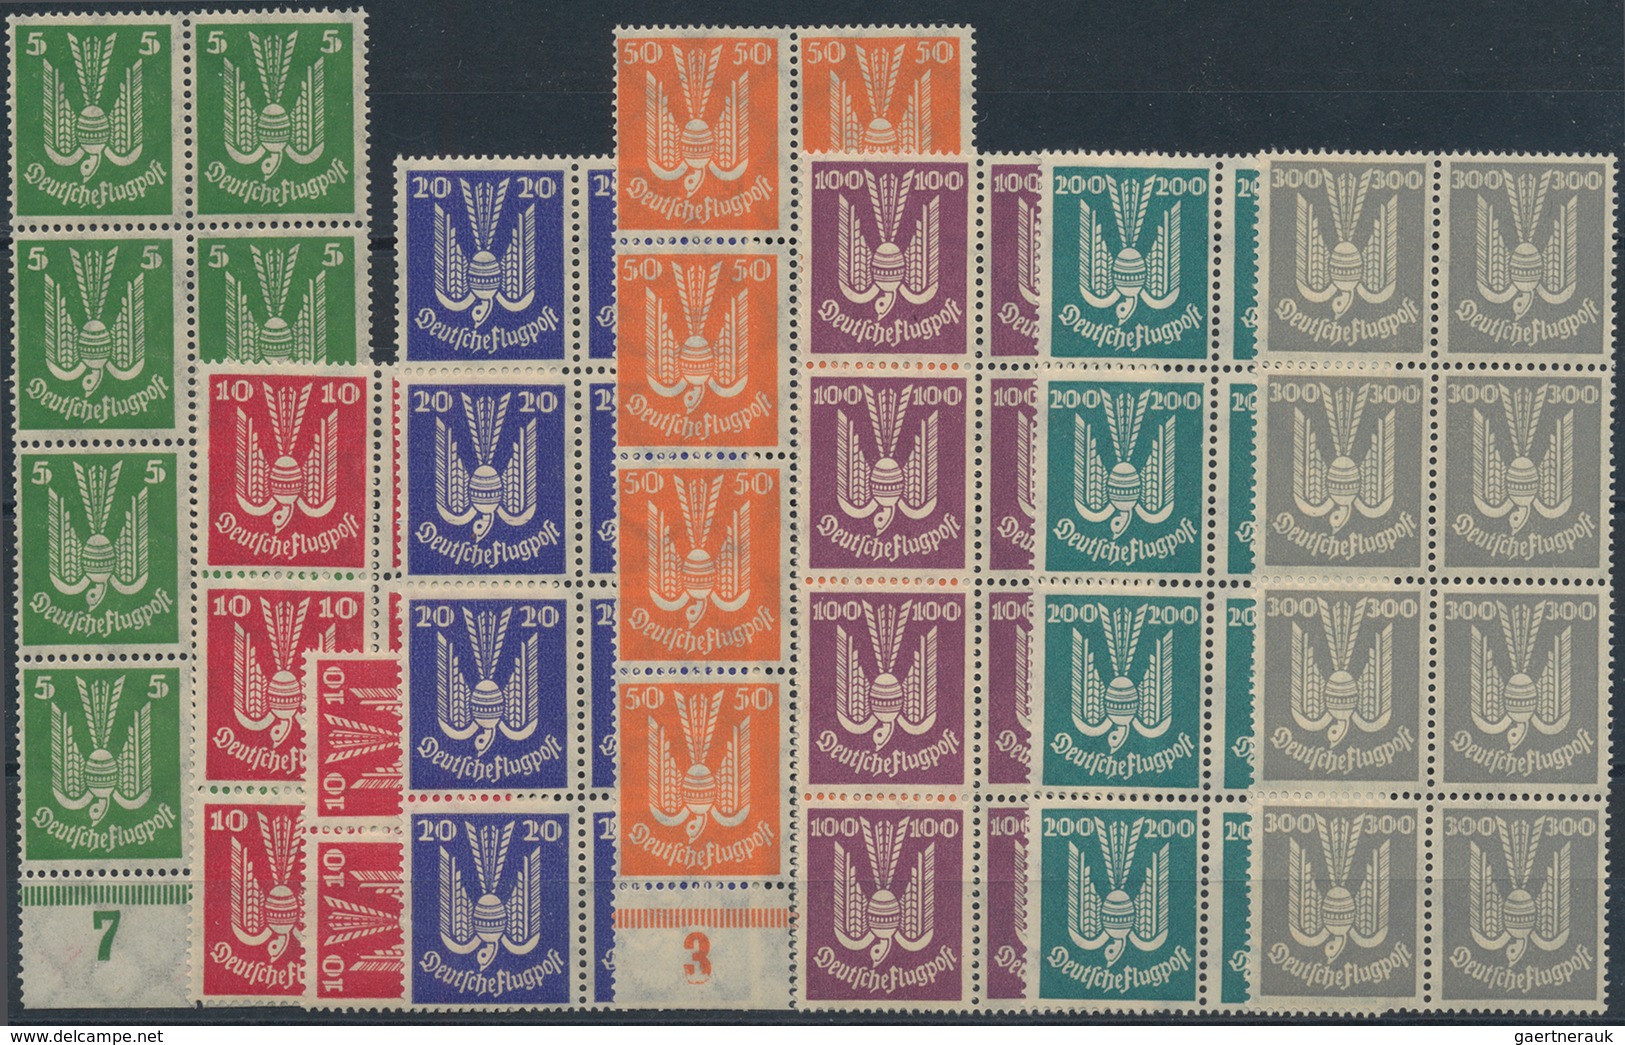 Deutsches Reich - Weimar: 1924, Flugpost Holztaube, Acht Serien In Einheiten, Postfrisch. MiNr. 344/ - Collections